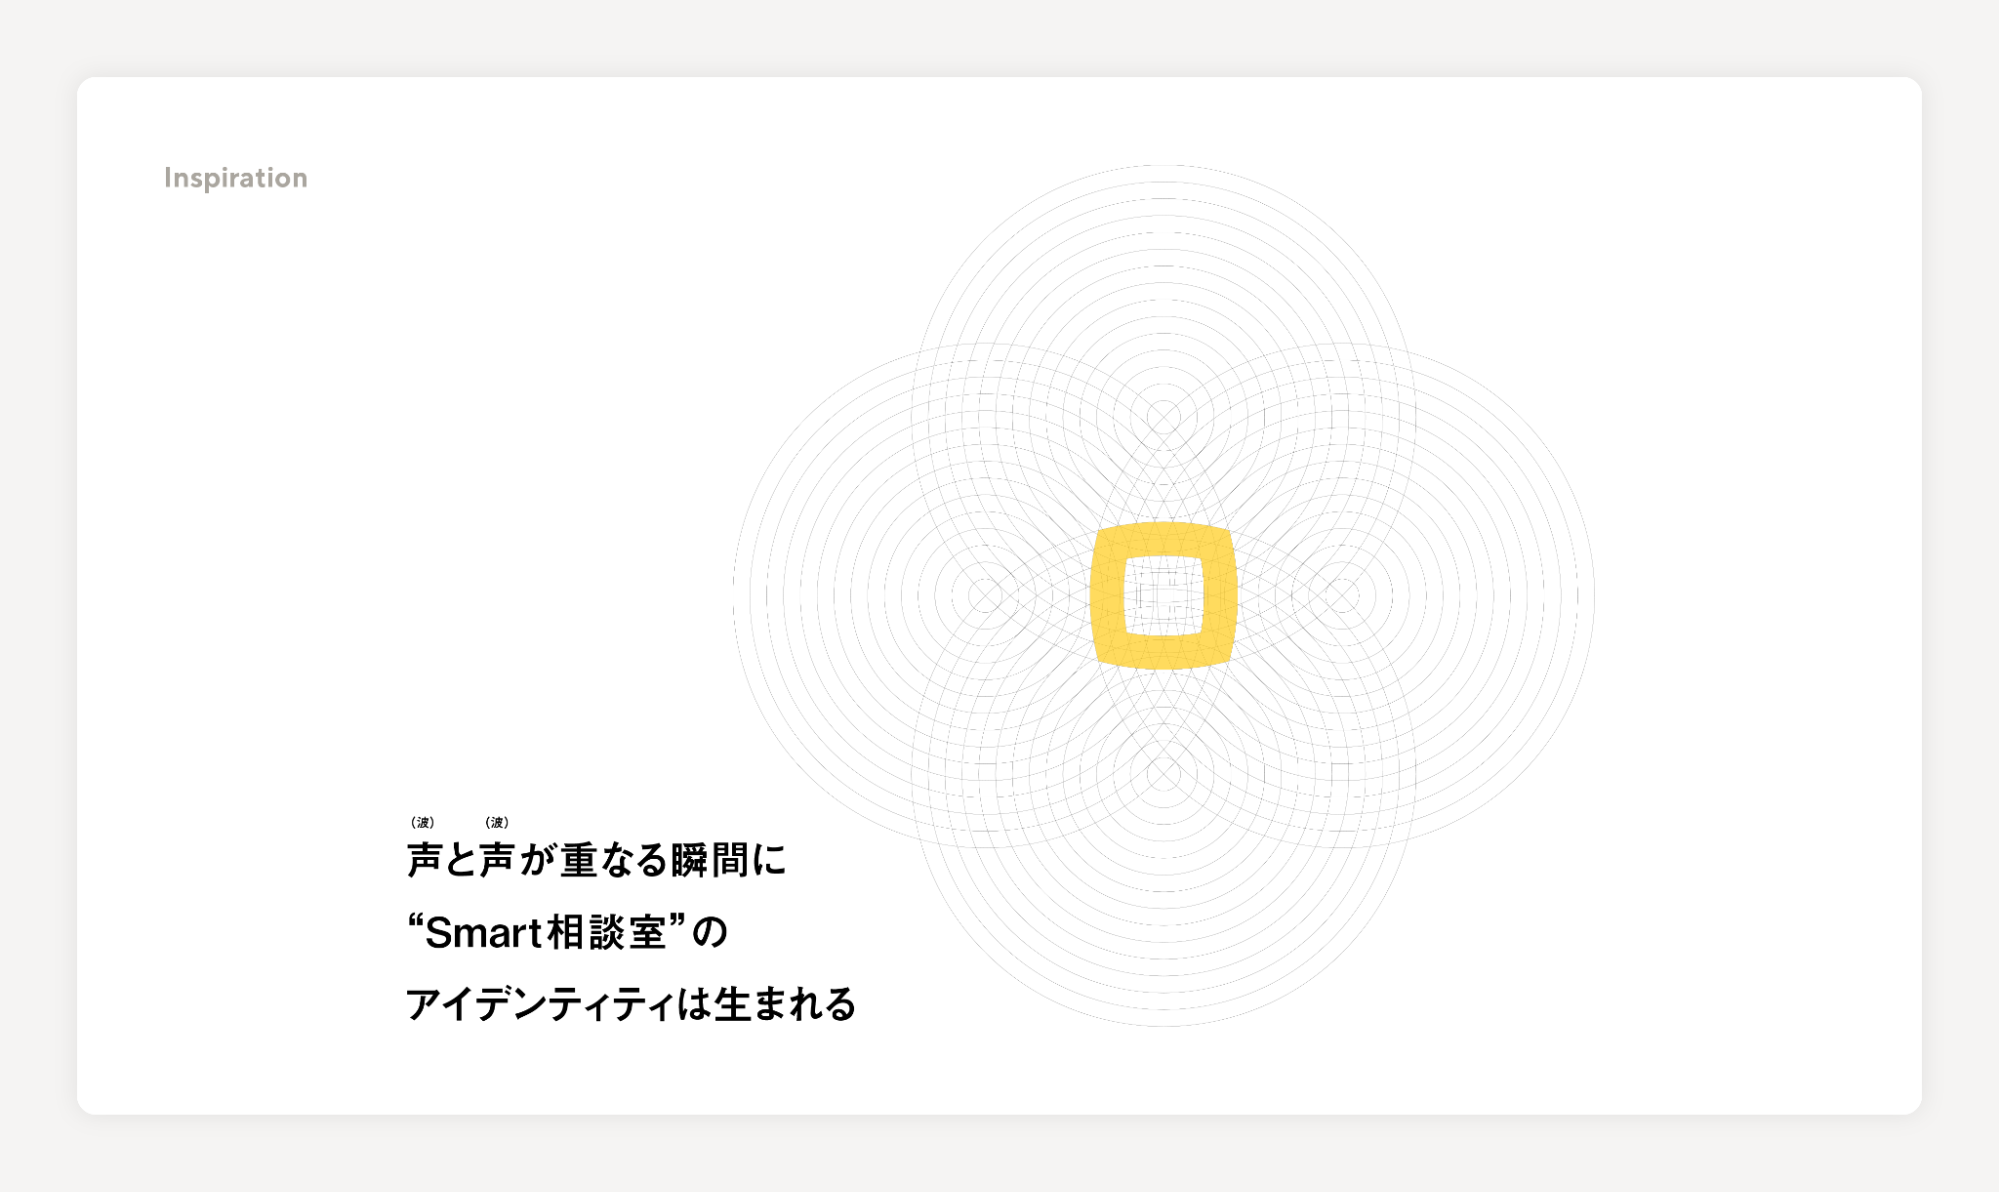 「声（波）と声（波）が重なる瞬間に”Smart相談室”のアイデンティティは生まれる」という文章とともに、何重にも重なった円がさらに重なり、その中央に黄色の四角形が描かれている図。